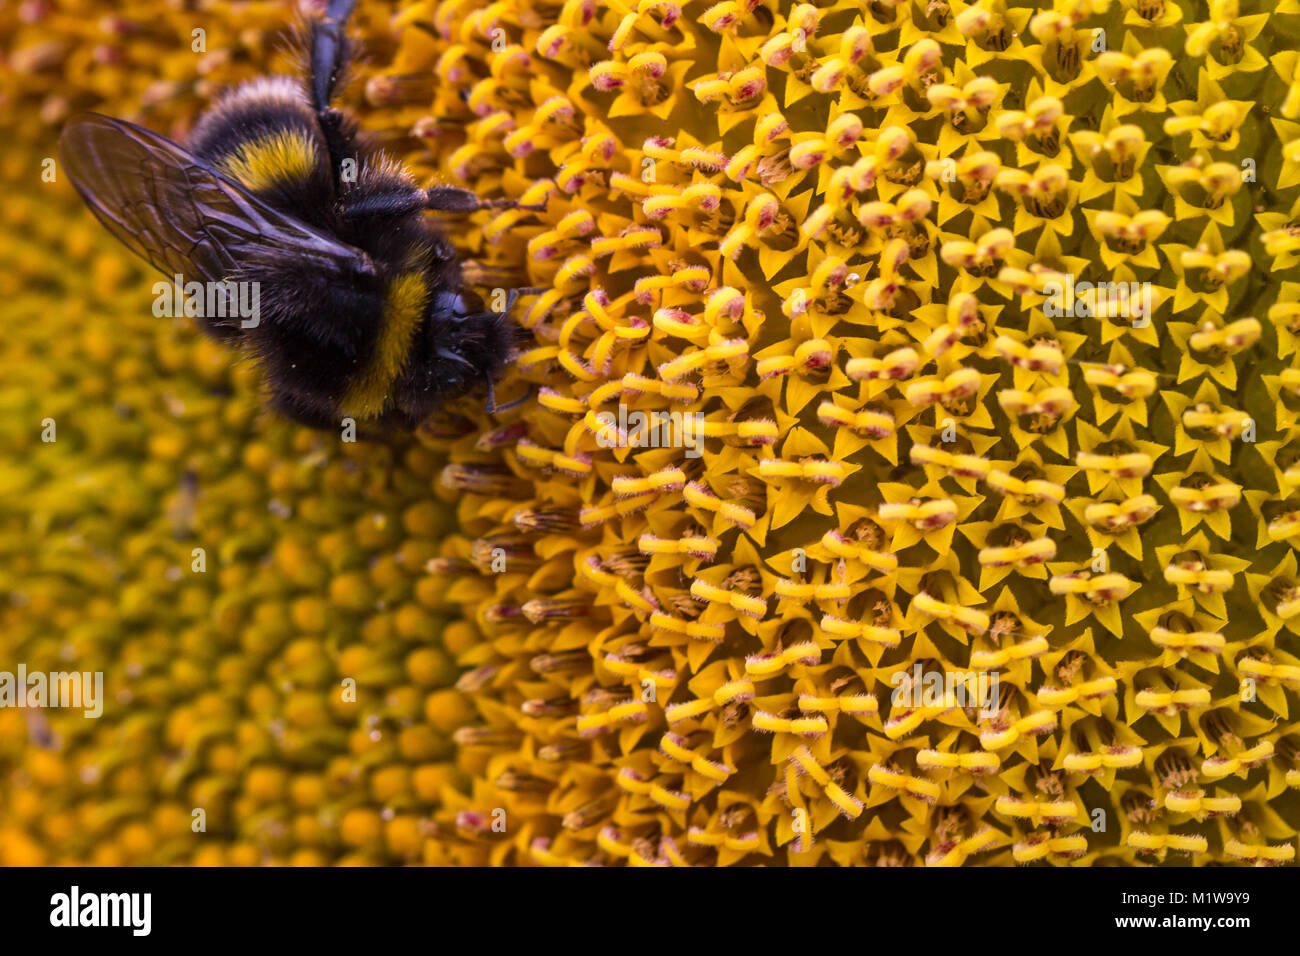 Immagine dettagliata di un'ape bumble, bombus terrestris, che si nuda al nettare e impollinando un girasole, Helianthus annuus. Garsons Farm, Inghilterra Foto Stock